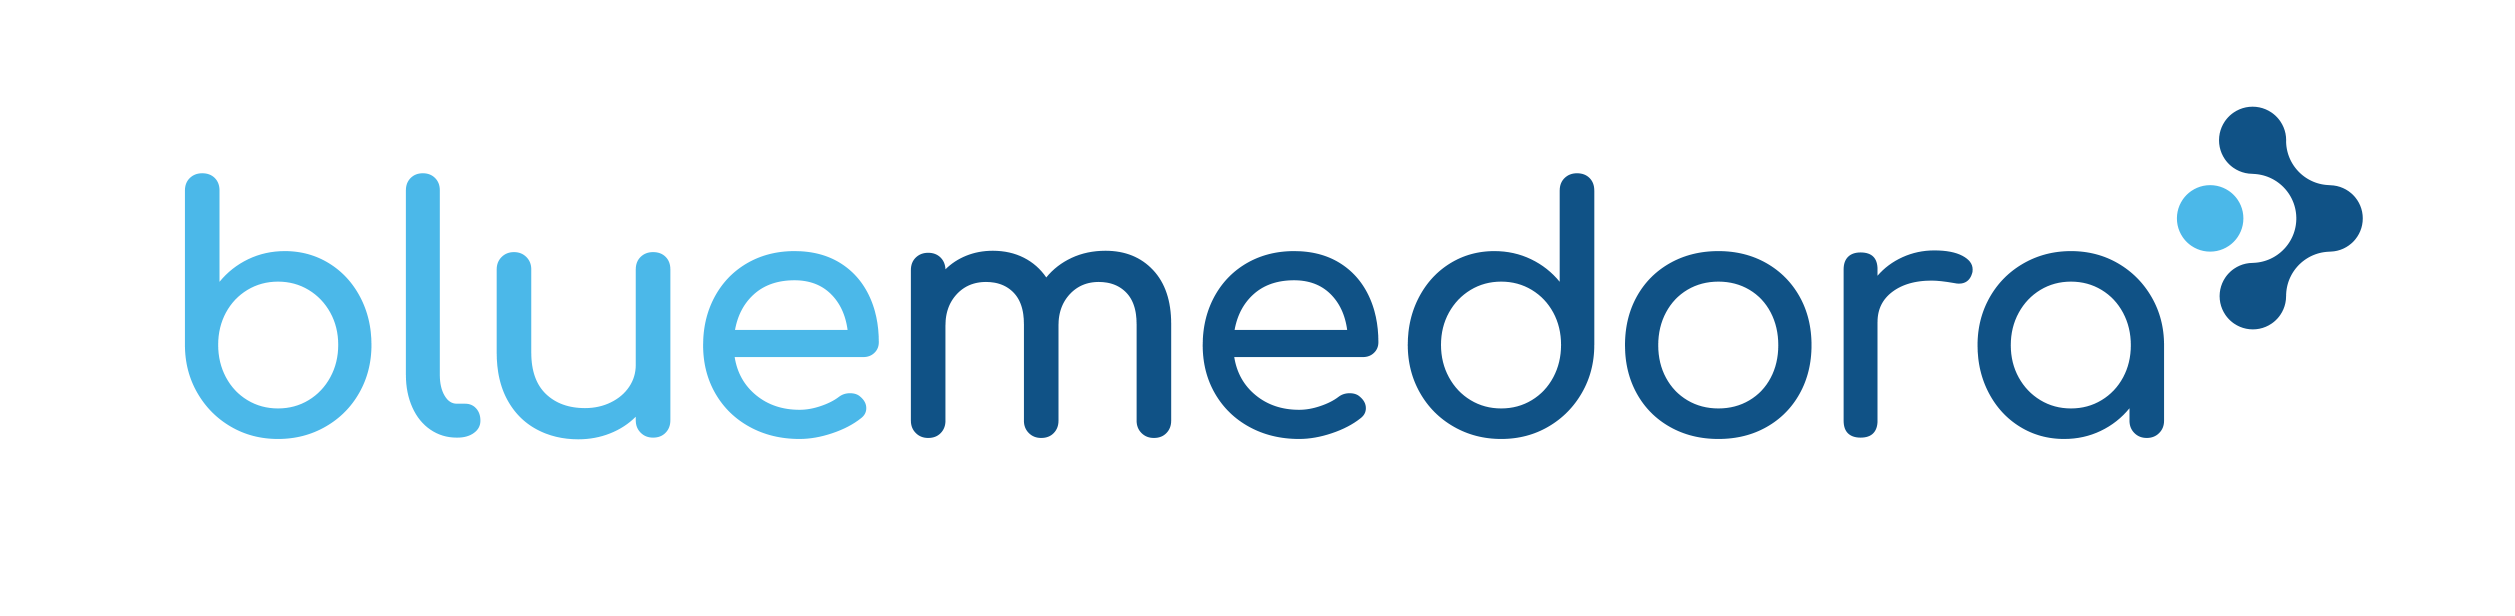 Blue Medora Logo